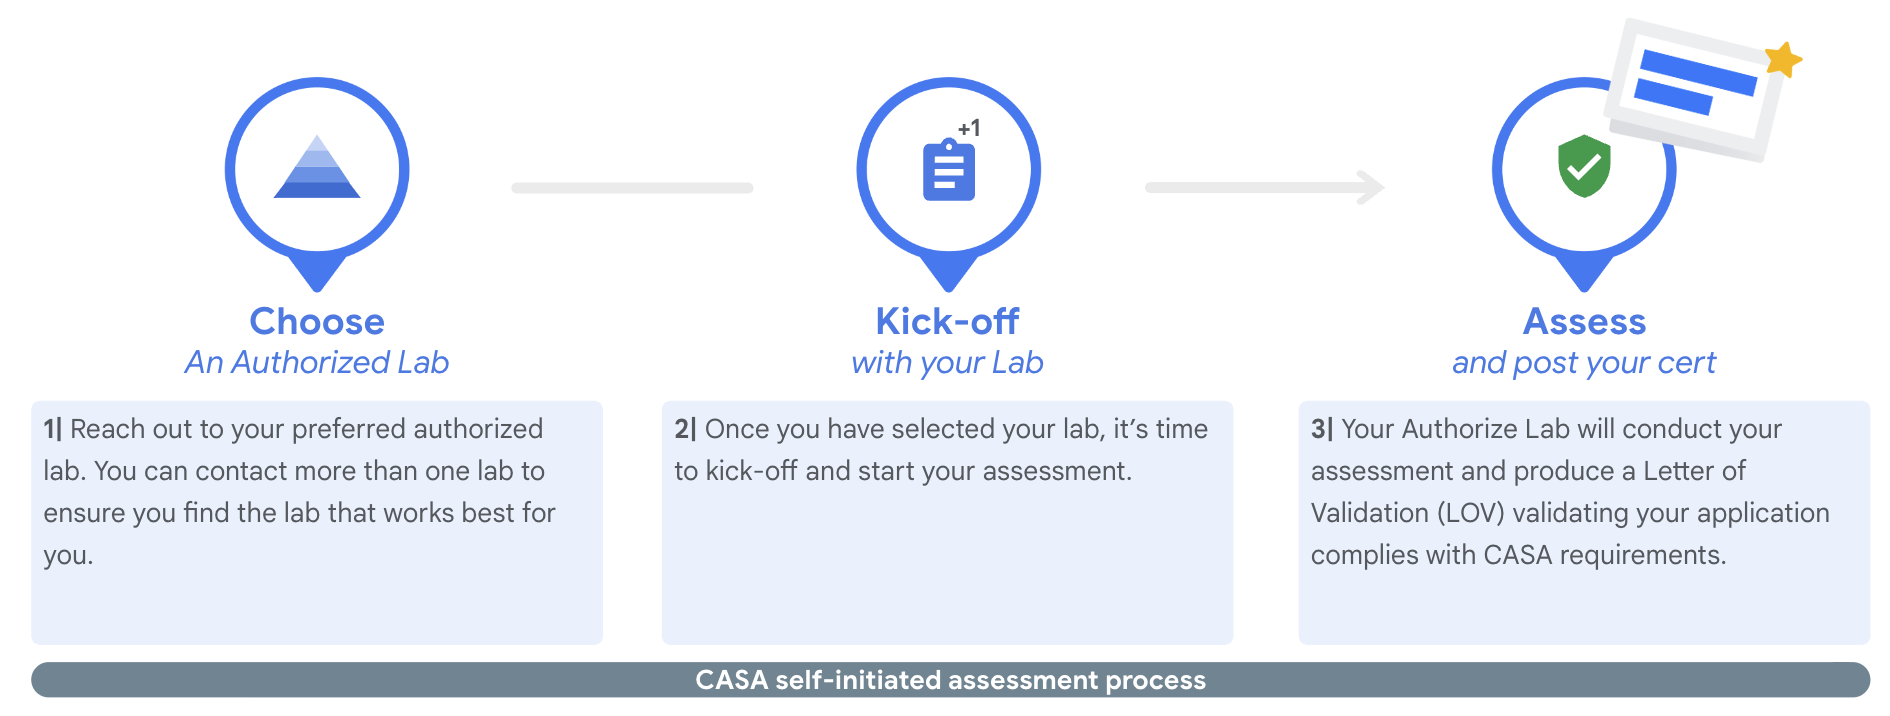 CASA Self-Initiated Assessment